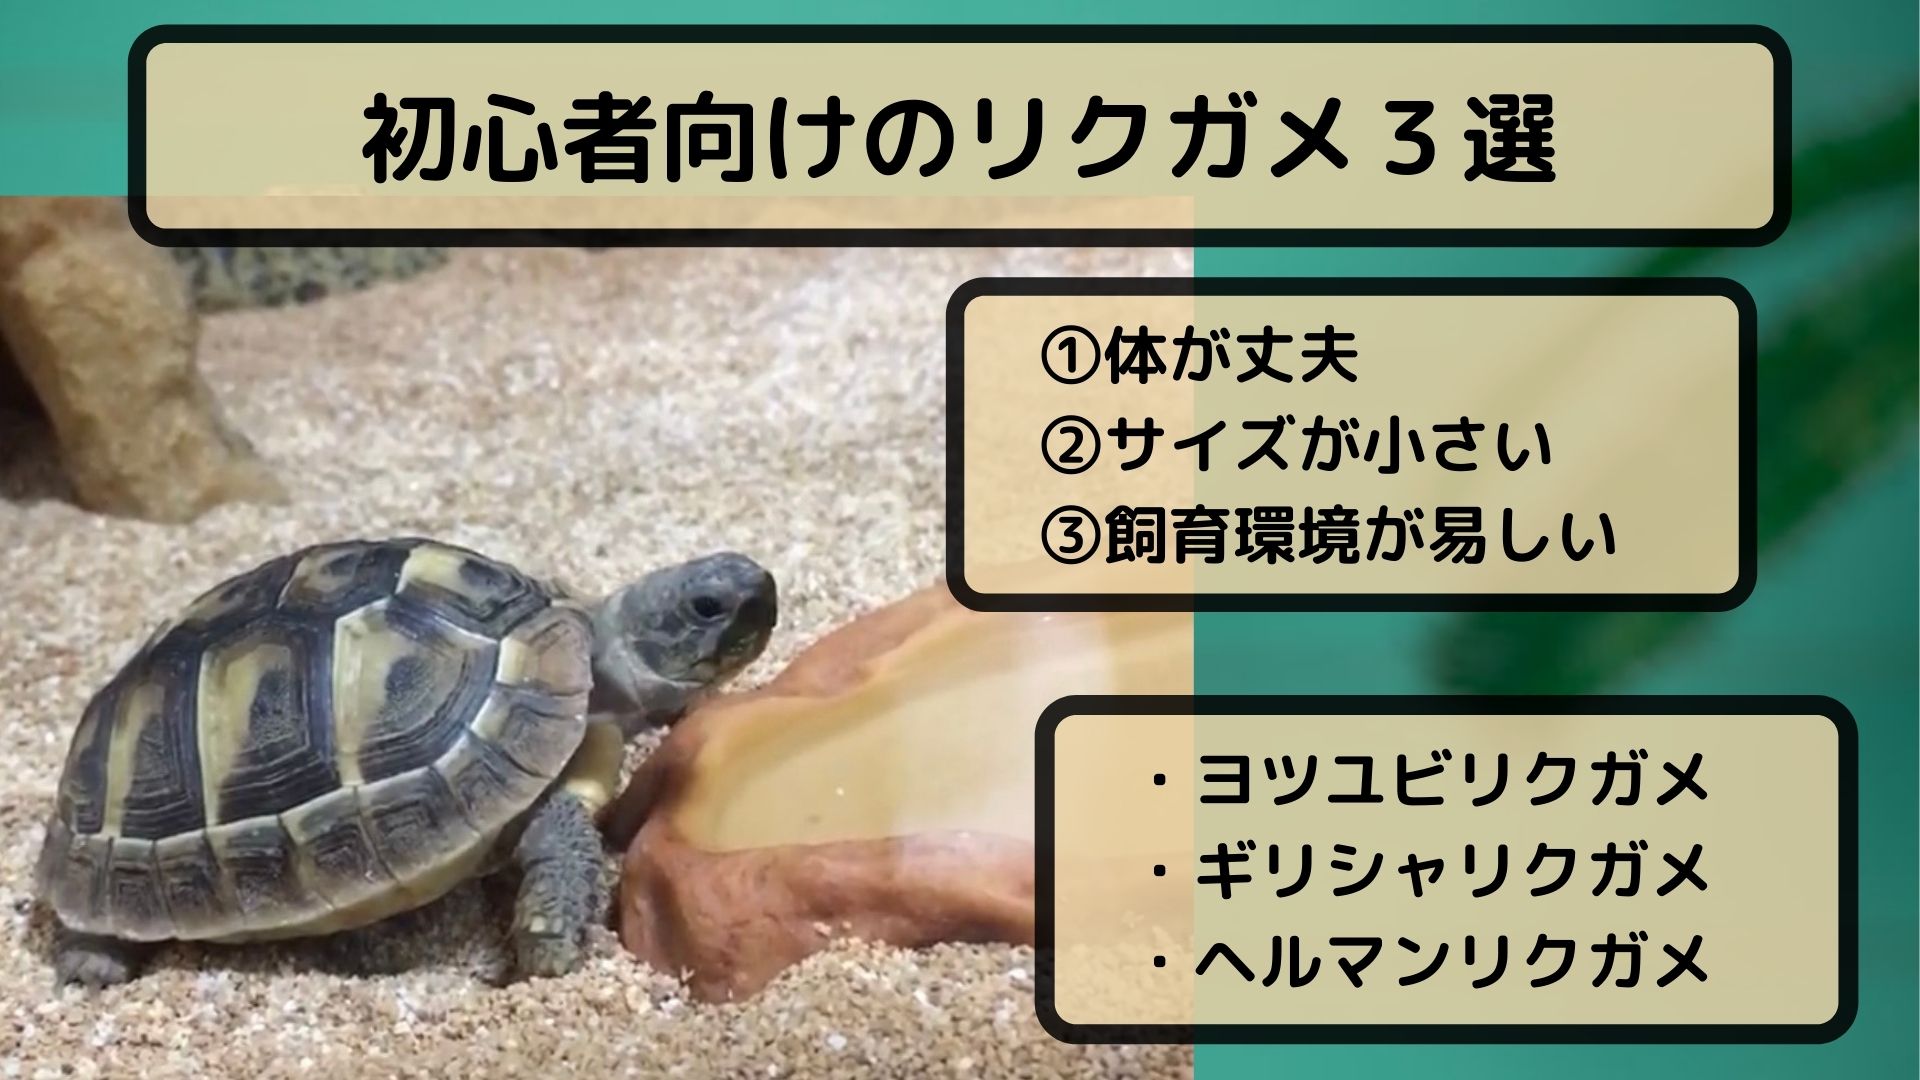 リクガメ 日本で飼育可能で 初心者も飼いやすい種類3選 じろぶろ じろーず ぶろぐ